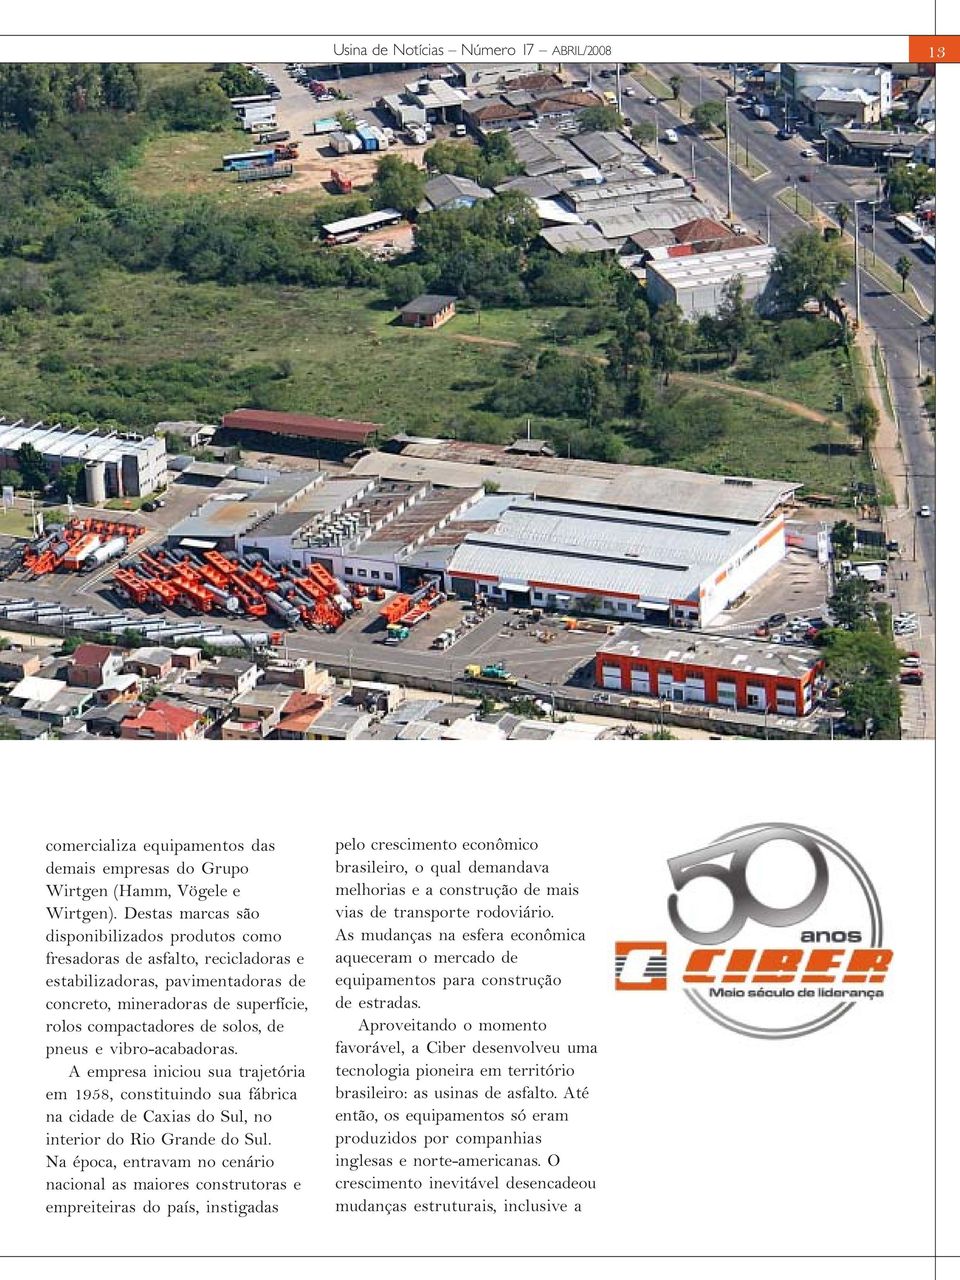 vibro-acabadoras. A empresa iniciou sua trajetória em 1958, constituindo sua fábrica na cidade de Caxias do Sul, no interior do Rio Grande do Sul.